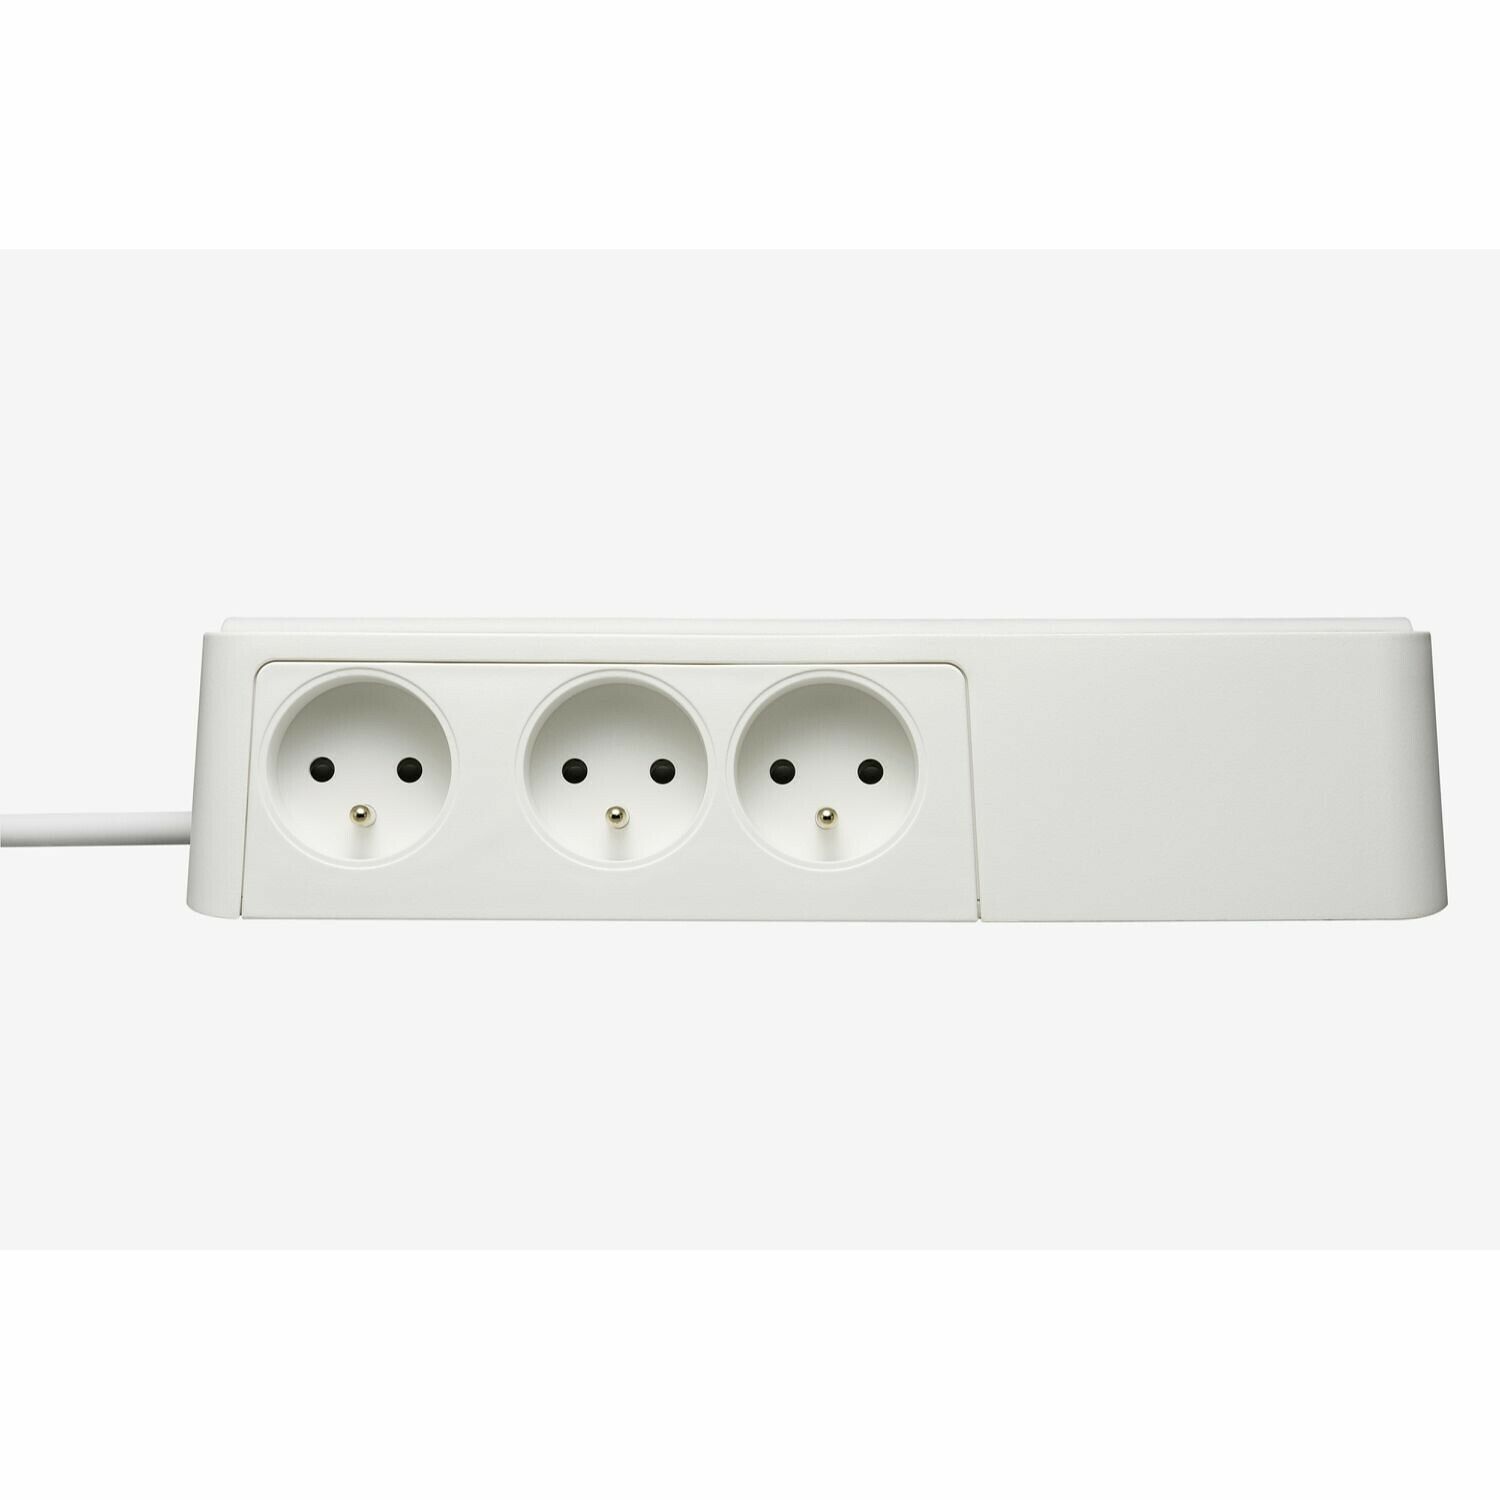 Multiprise parafoudre avec interrupteurs indépendants 6 ports - Blanc